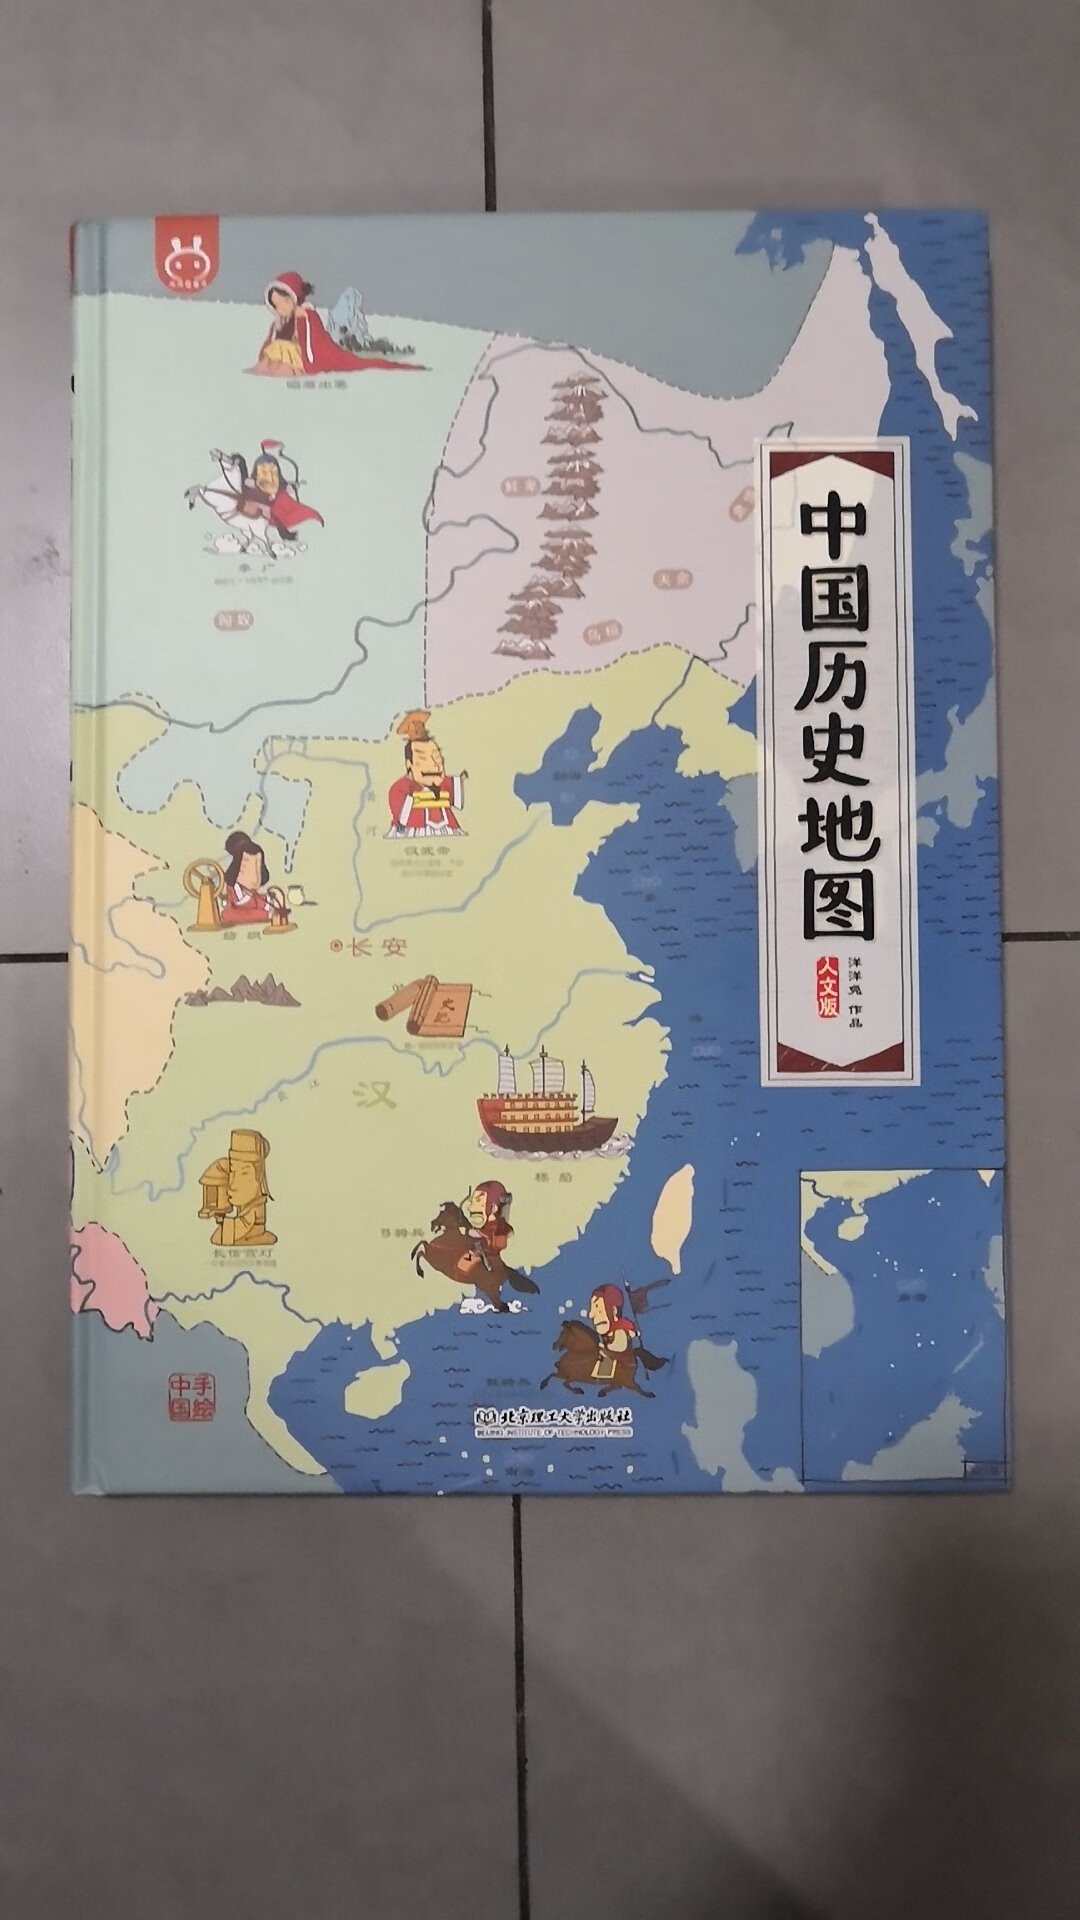 中国历史地图（升级版），不错的图书。